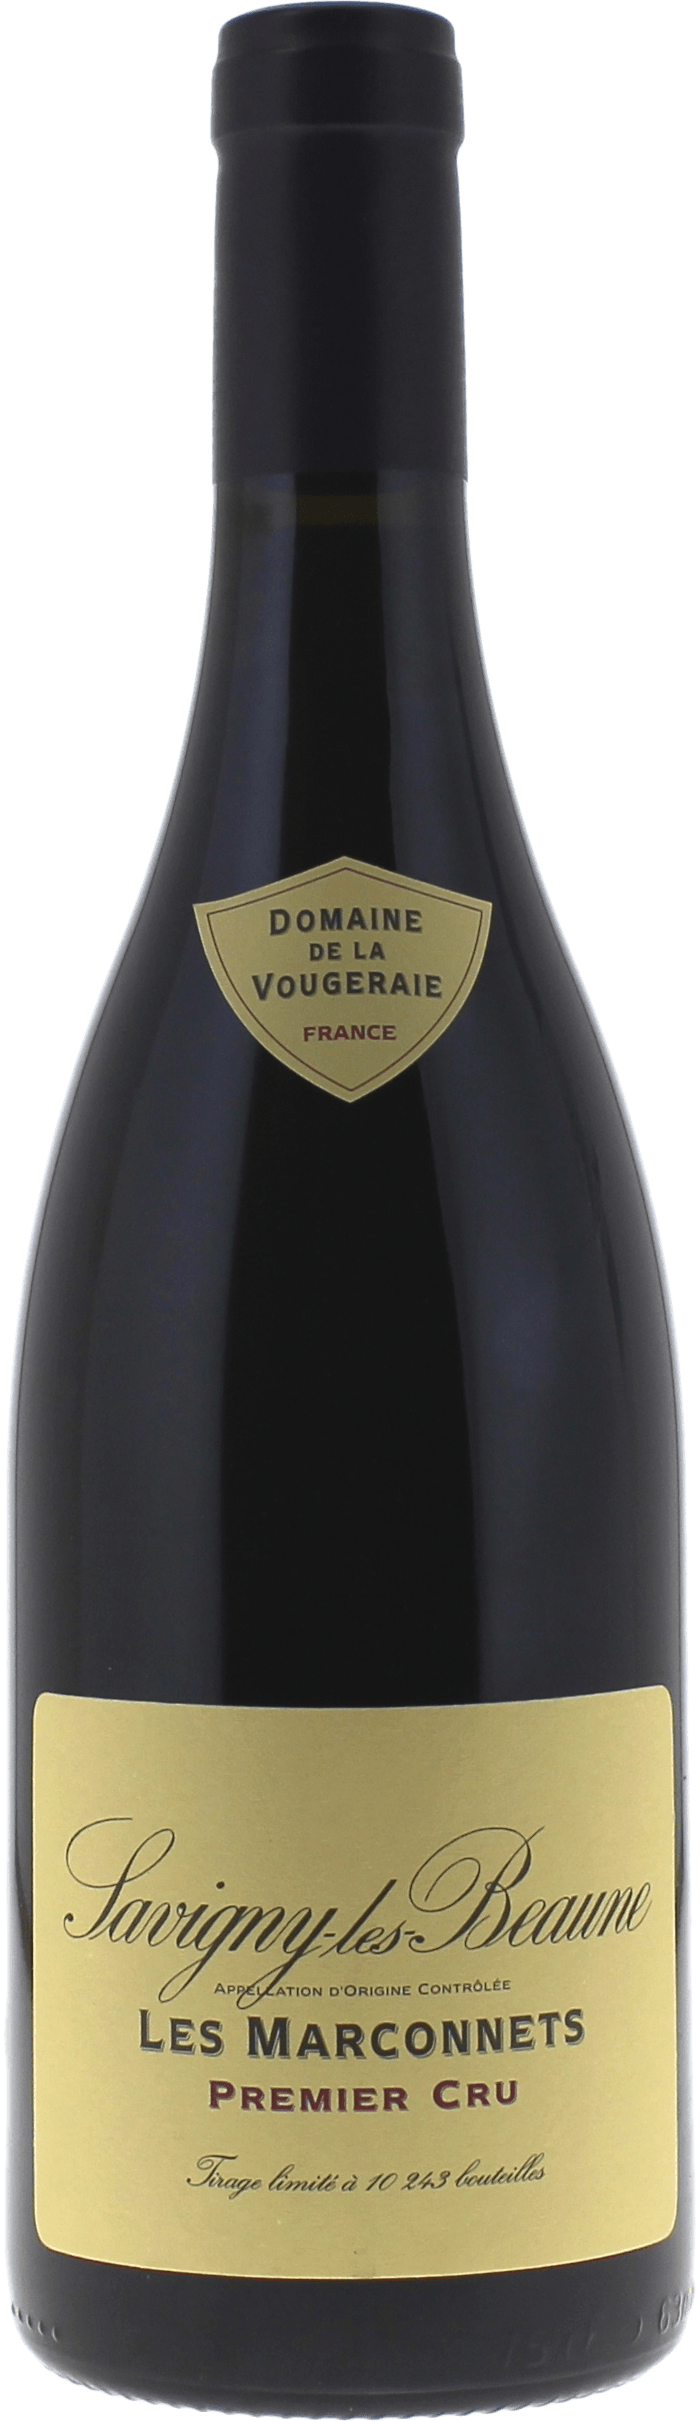 Savigny les beaune les marconnets 1er cru 2017 Domaine VOUGERAIE, Bourgogne rouge